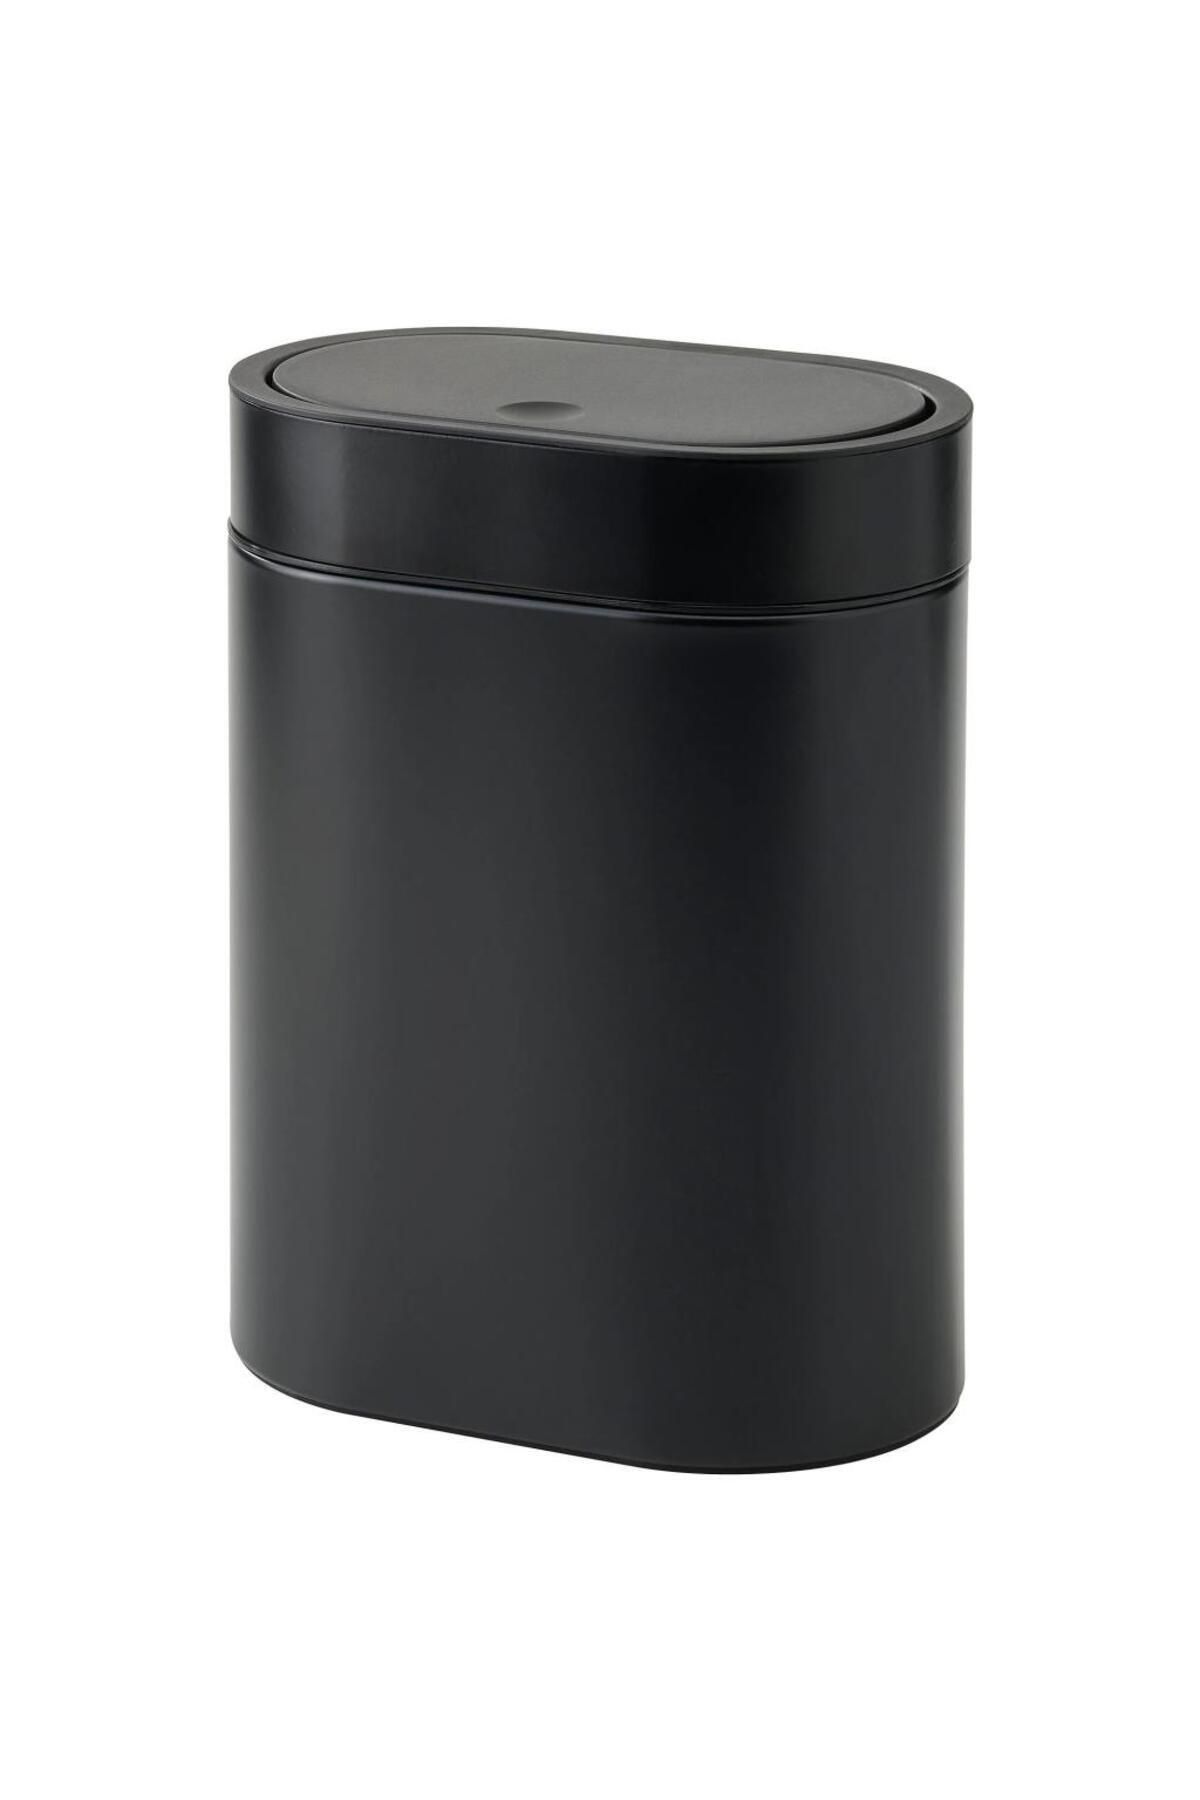 IKEA Brogrund Dokunmatik Çöp Kovası - Kutusu - 4 lt - Paslanmaz Çelik / Siyah